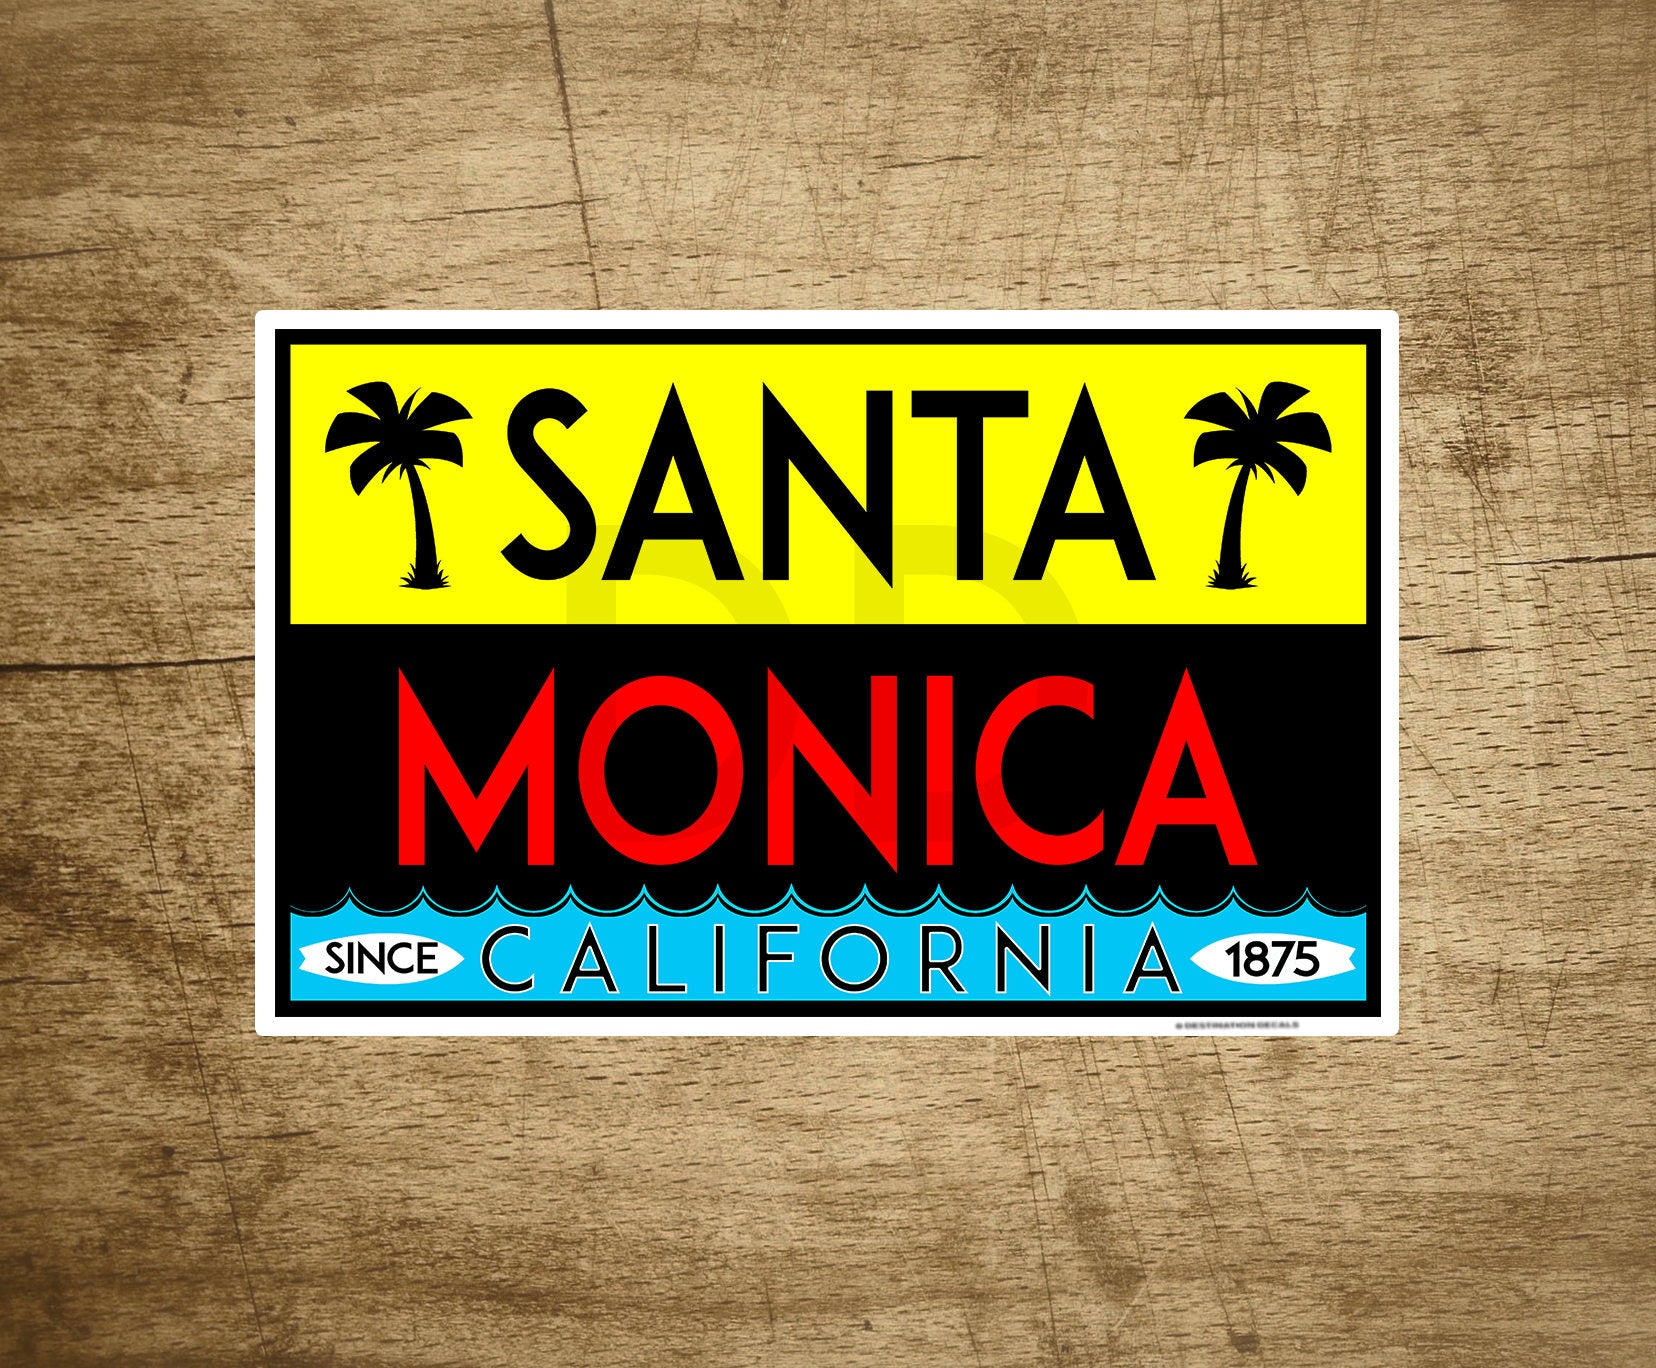 Santa Monica California Surfing Decal Sticker Pacific Ocean Beach 4" x 2.5"